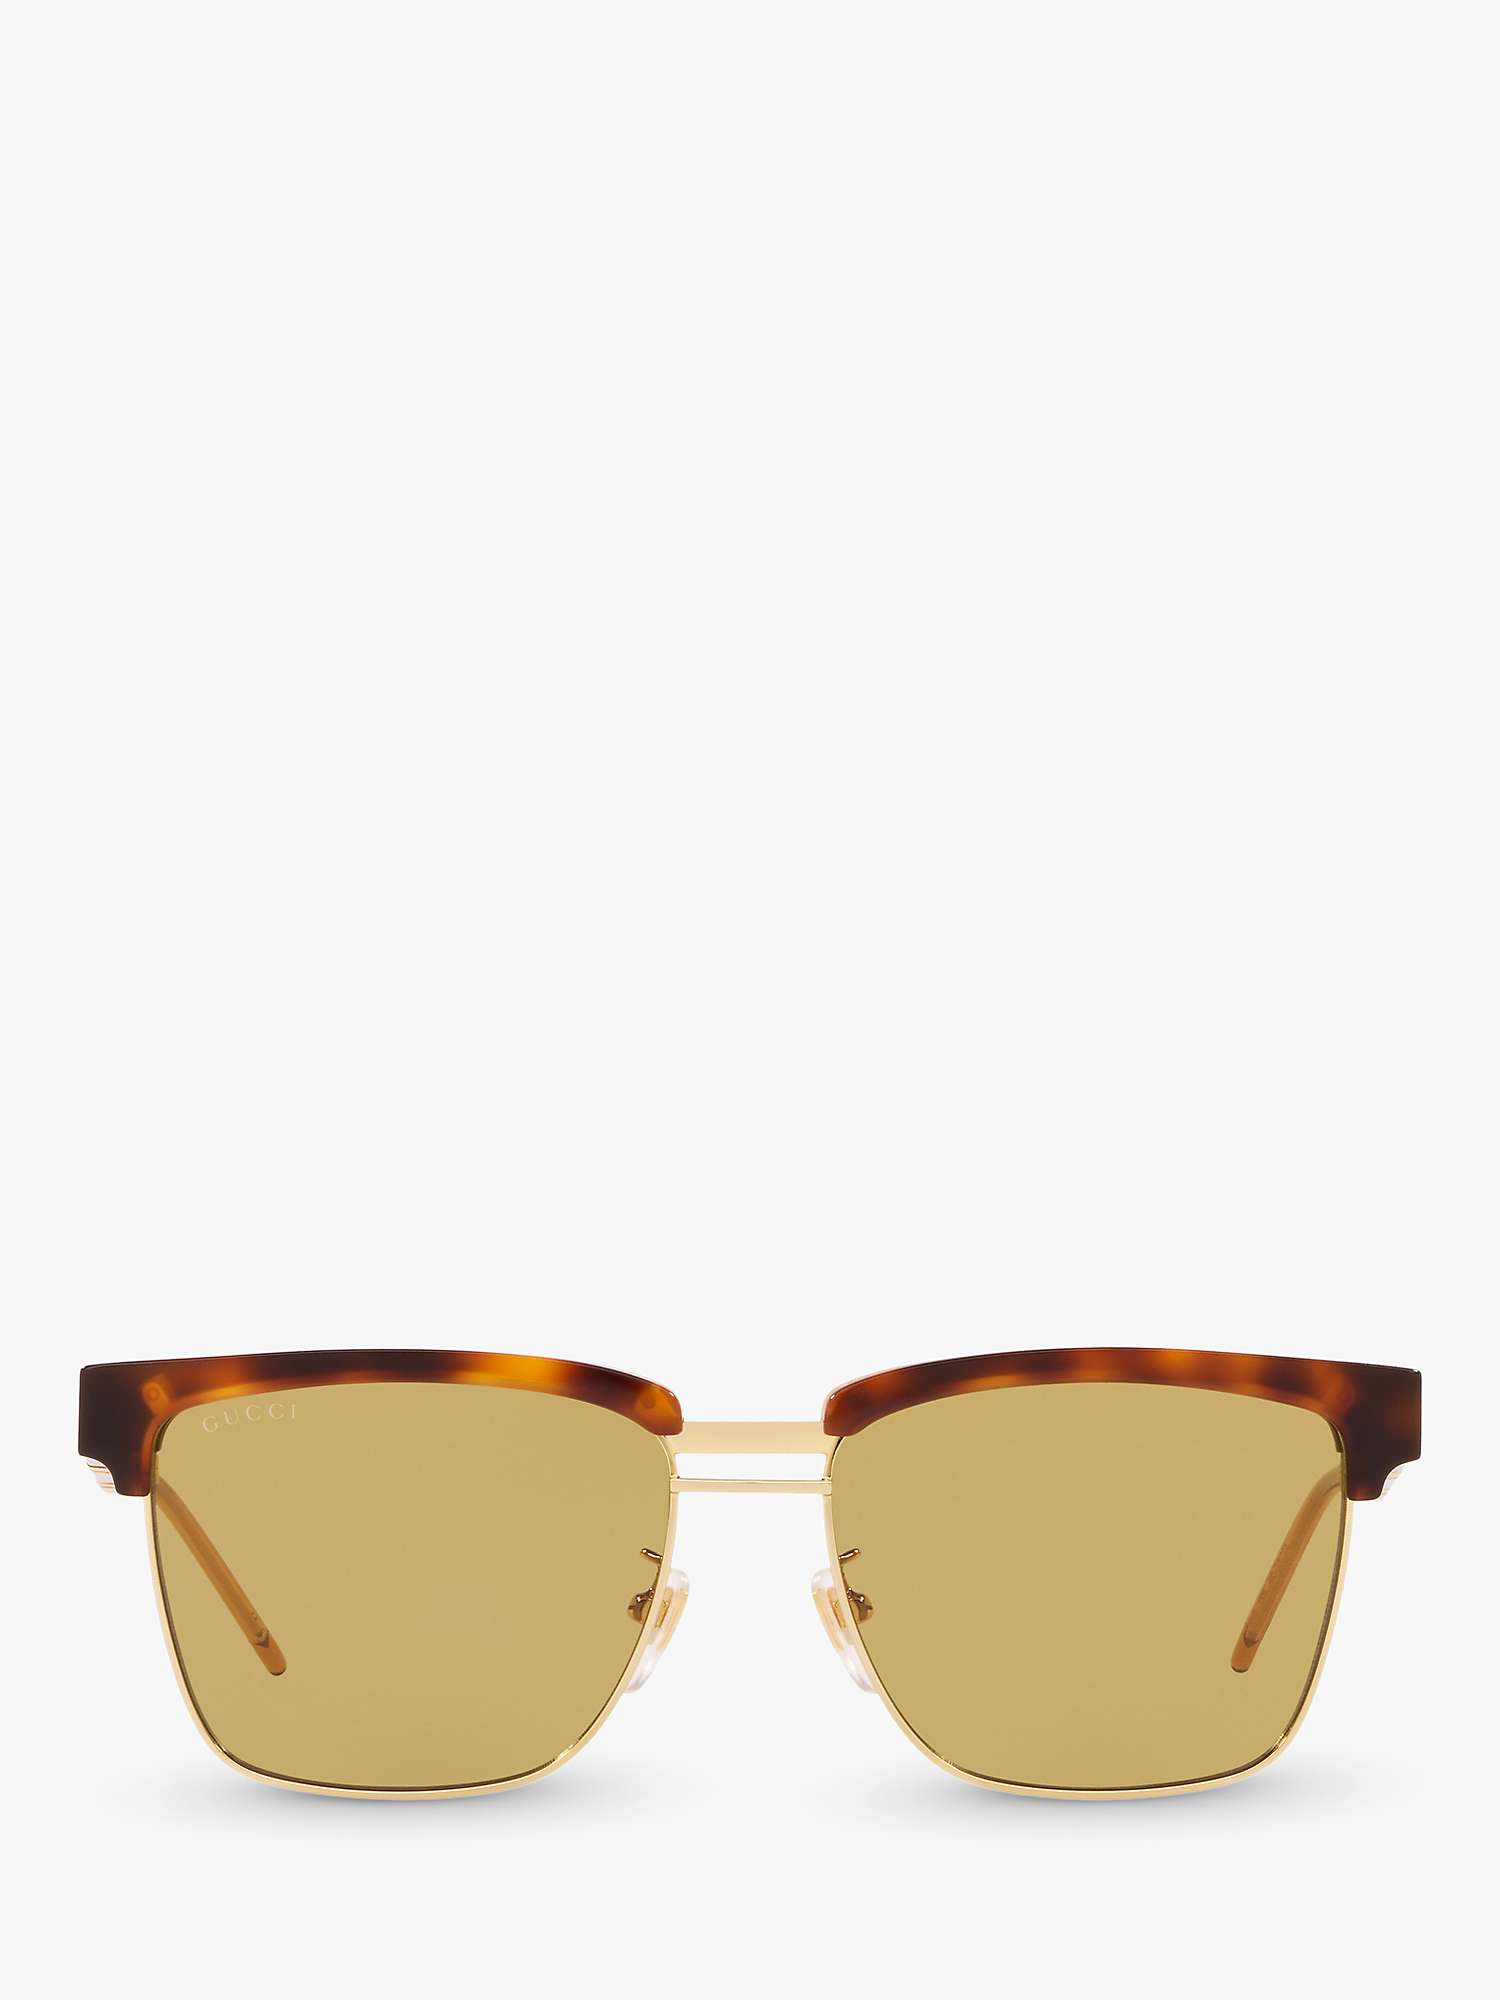 Gucci GG0603S Men's Rectangular Sunglasses, Tortoise/Yellow at John ...